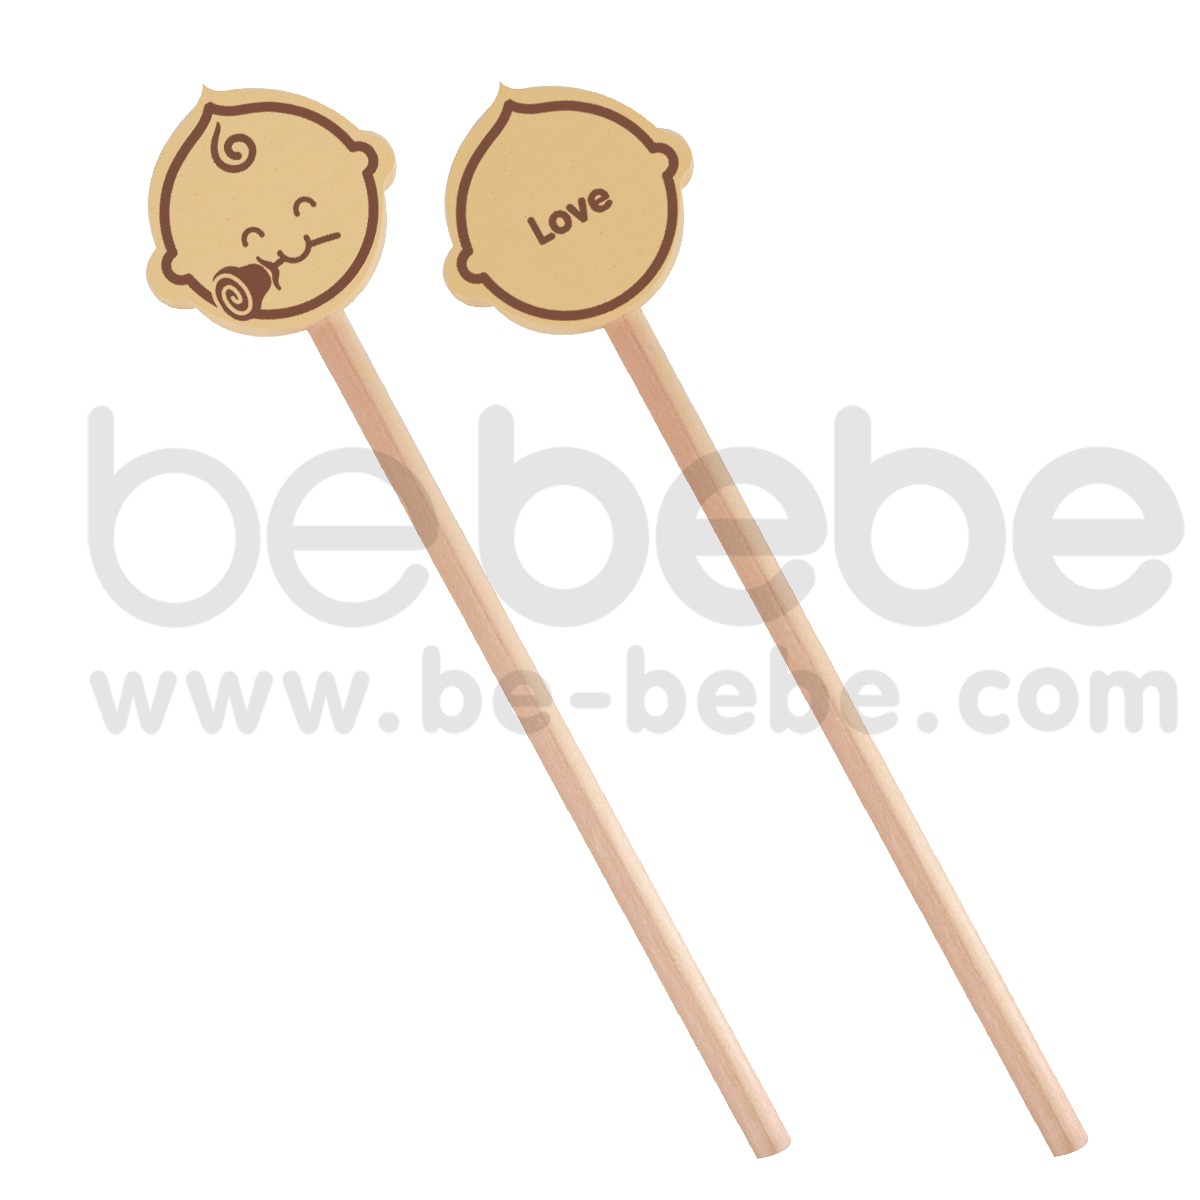 bebebe : Cream Pencil- Love